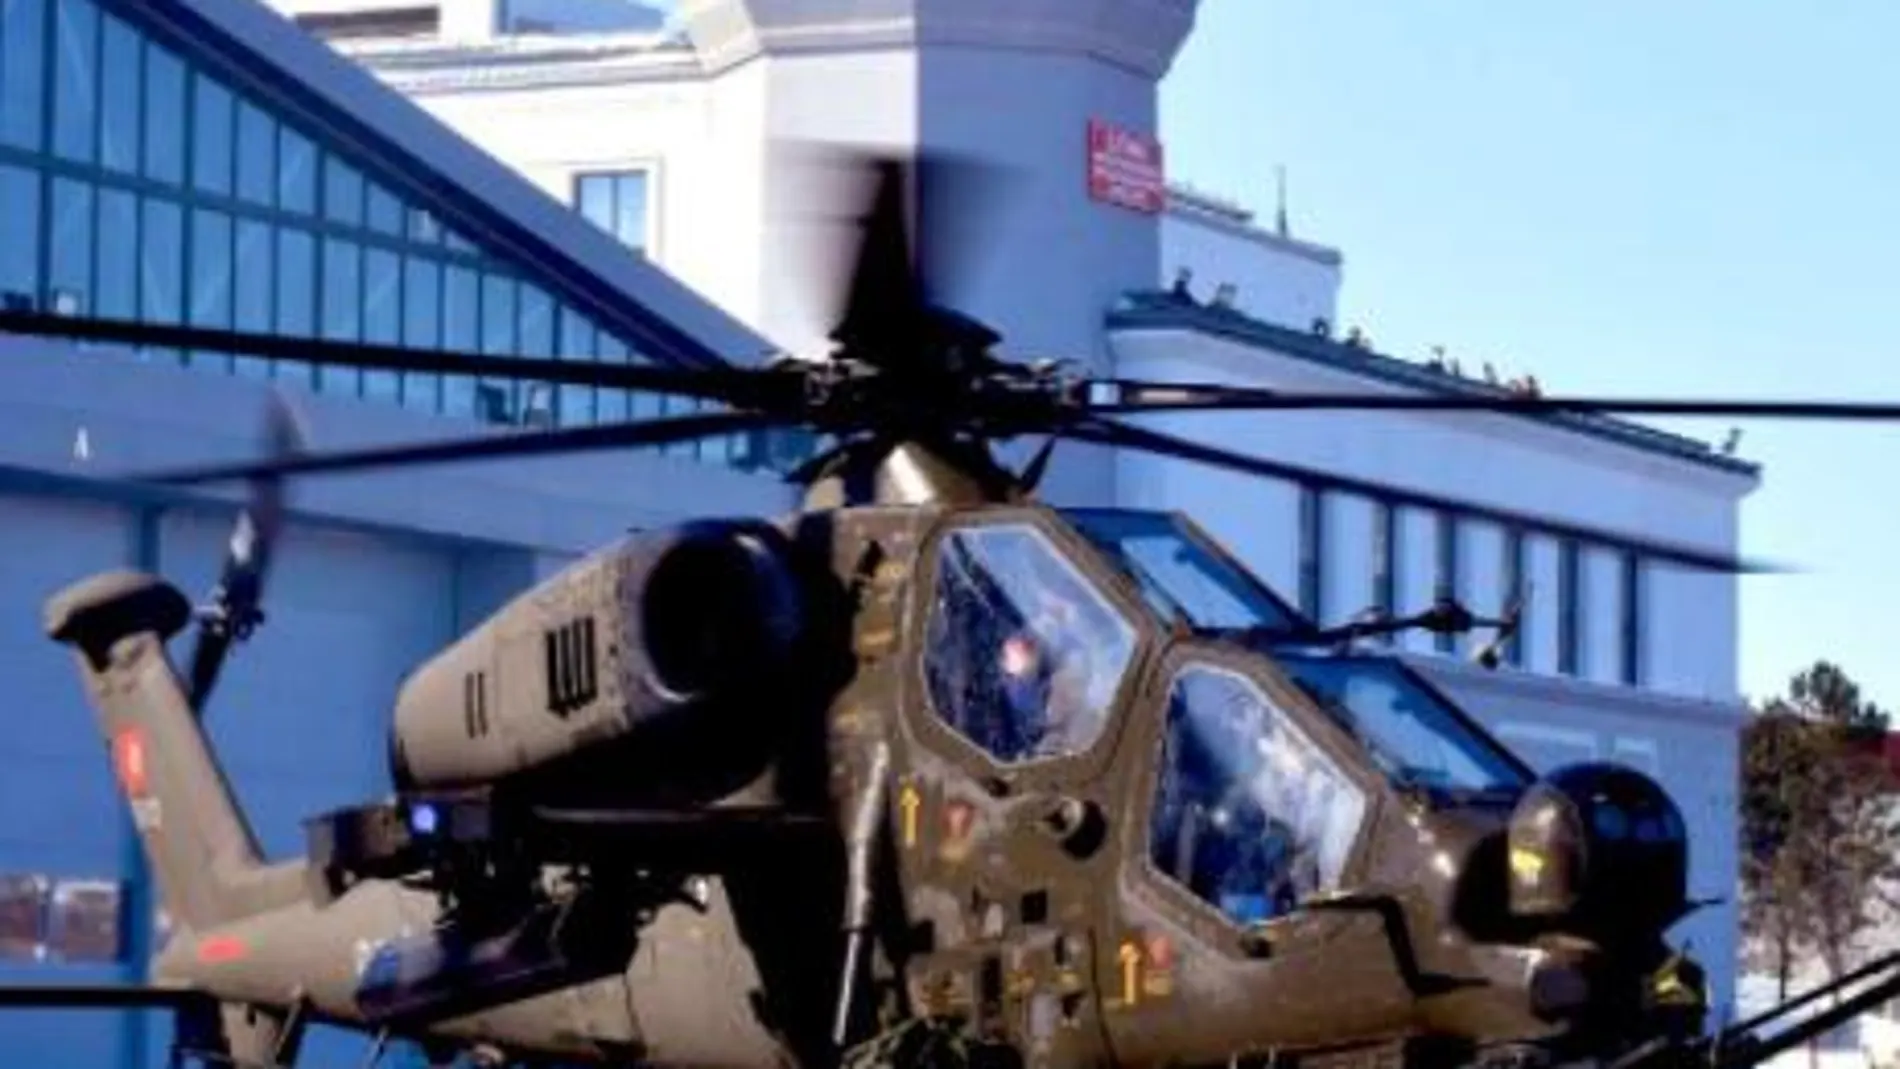 Marruecos comprará a Turquía 22 helicópteros T129 ATAK, como el que muestra la fotografía